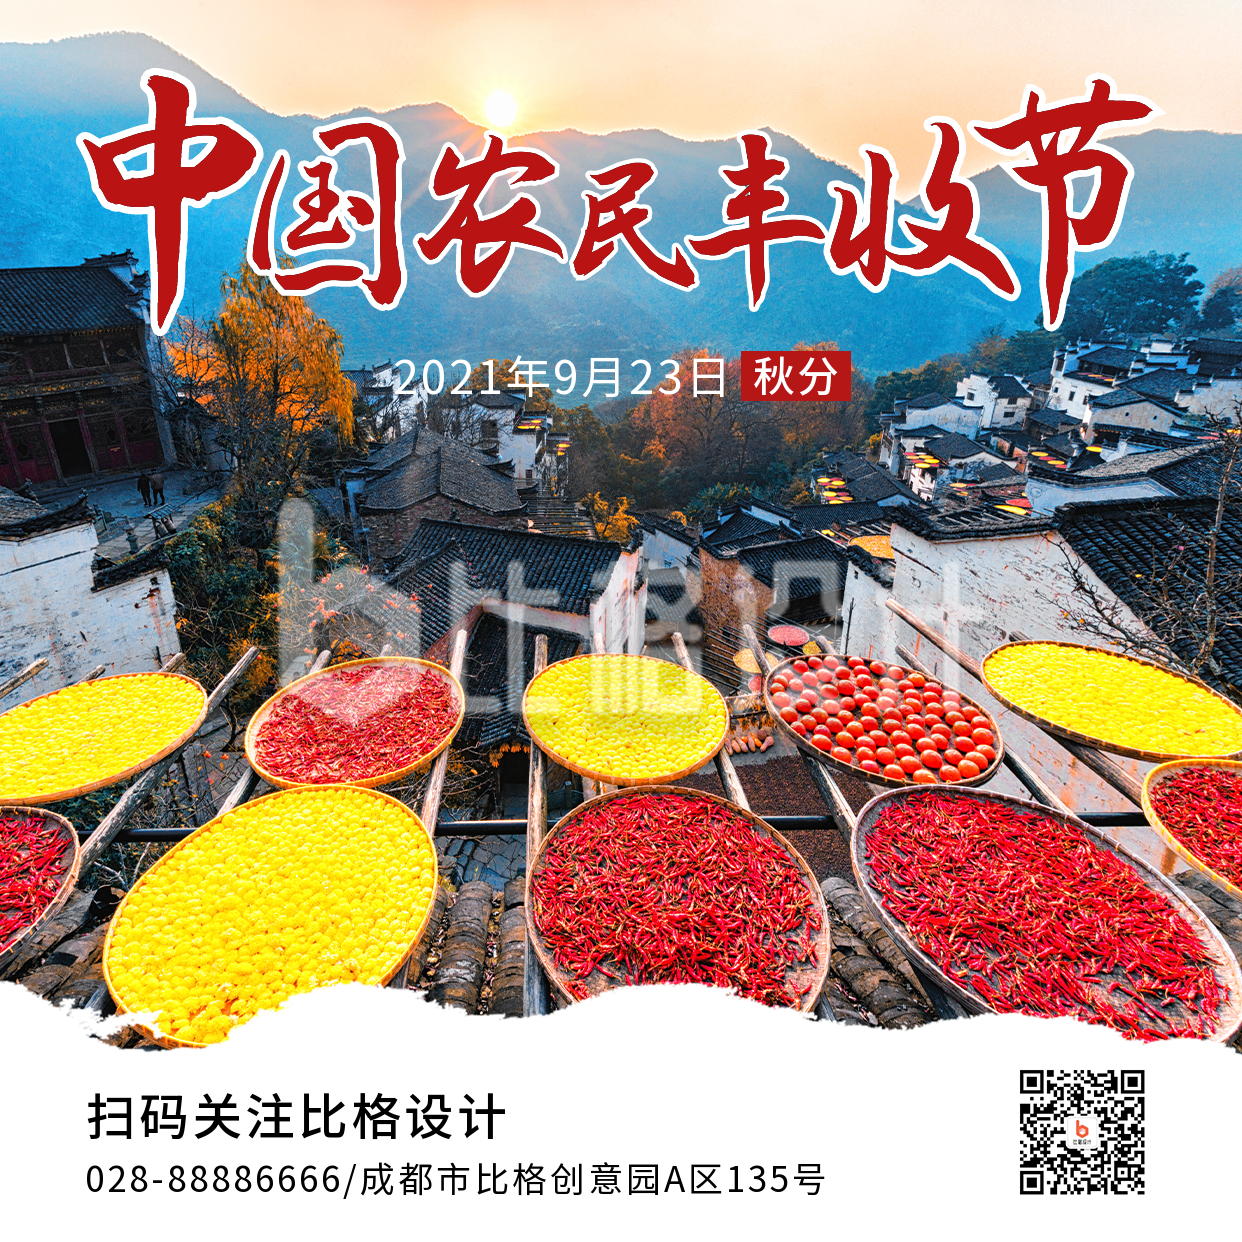 中国农民丰收节农耕秋收实景方形海报